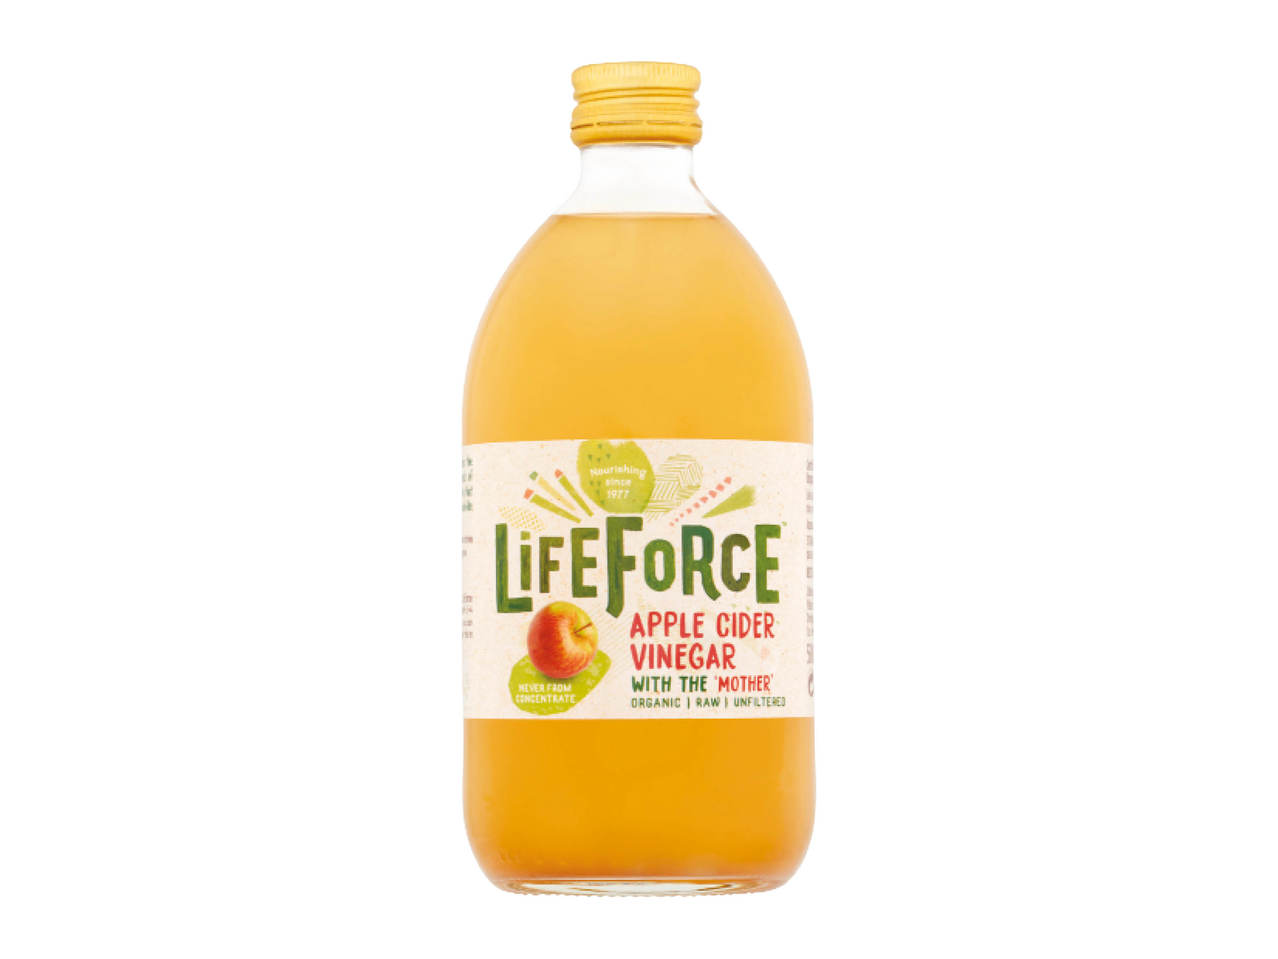 Lifeforce Apple Cider Vinegar